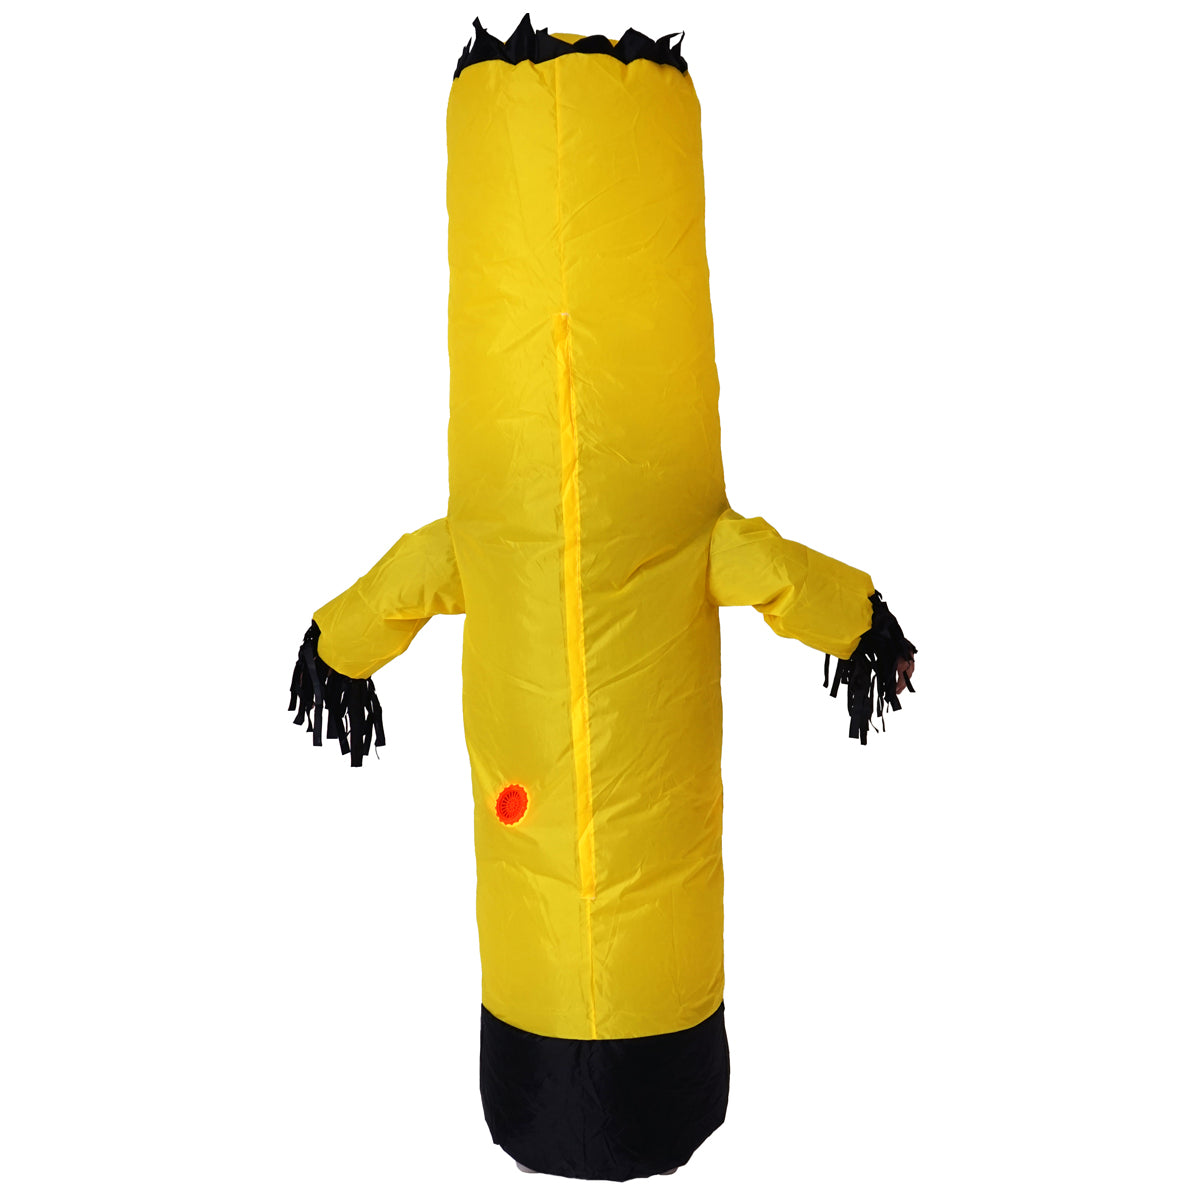 Costume de Tubeman gonflable pour adulte